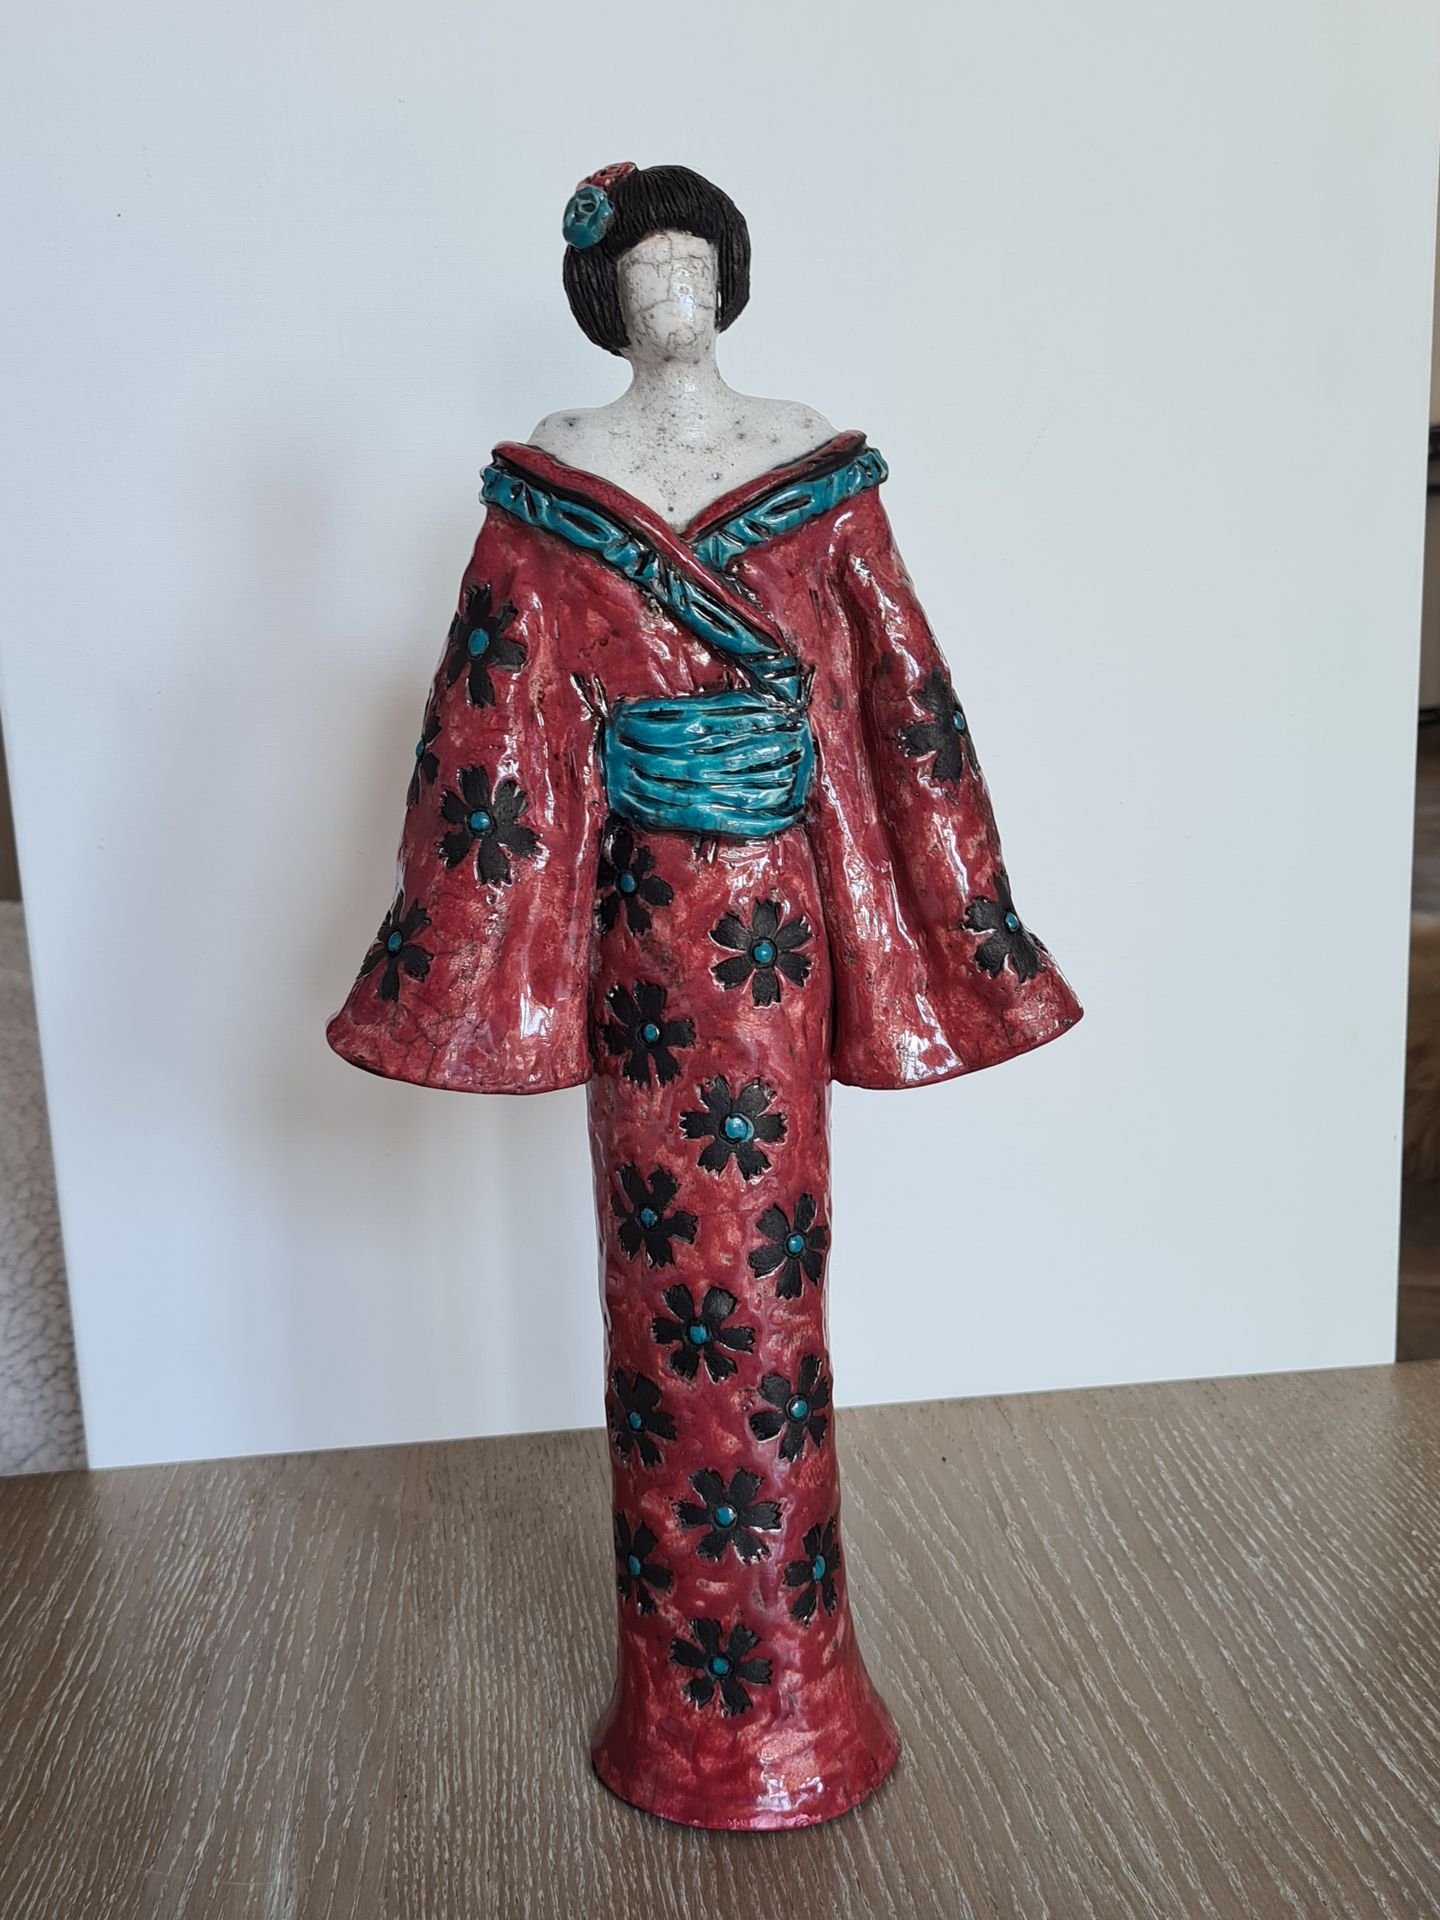 Null Brigitte LOMBARD, Geisha en raku burdeos, altura 45cm, pieza única